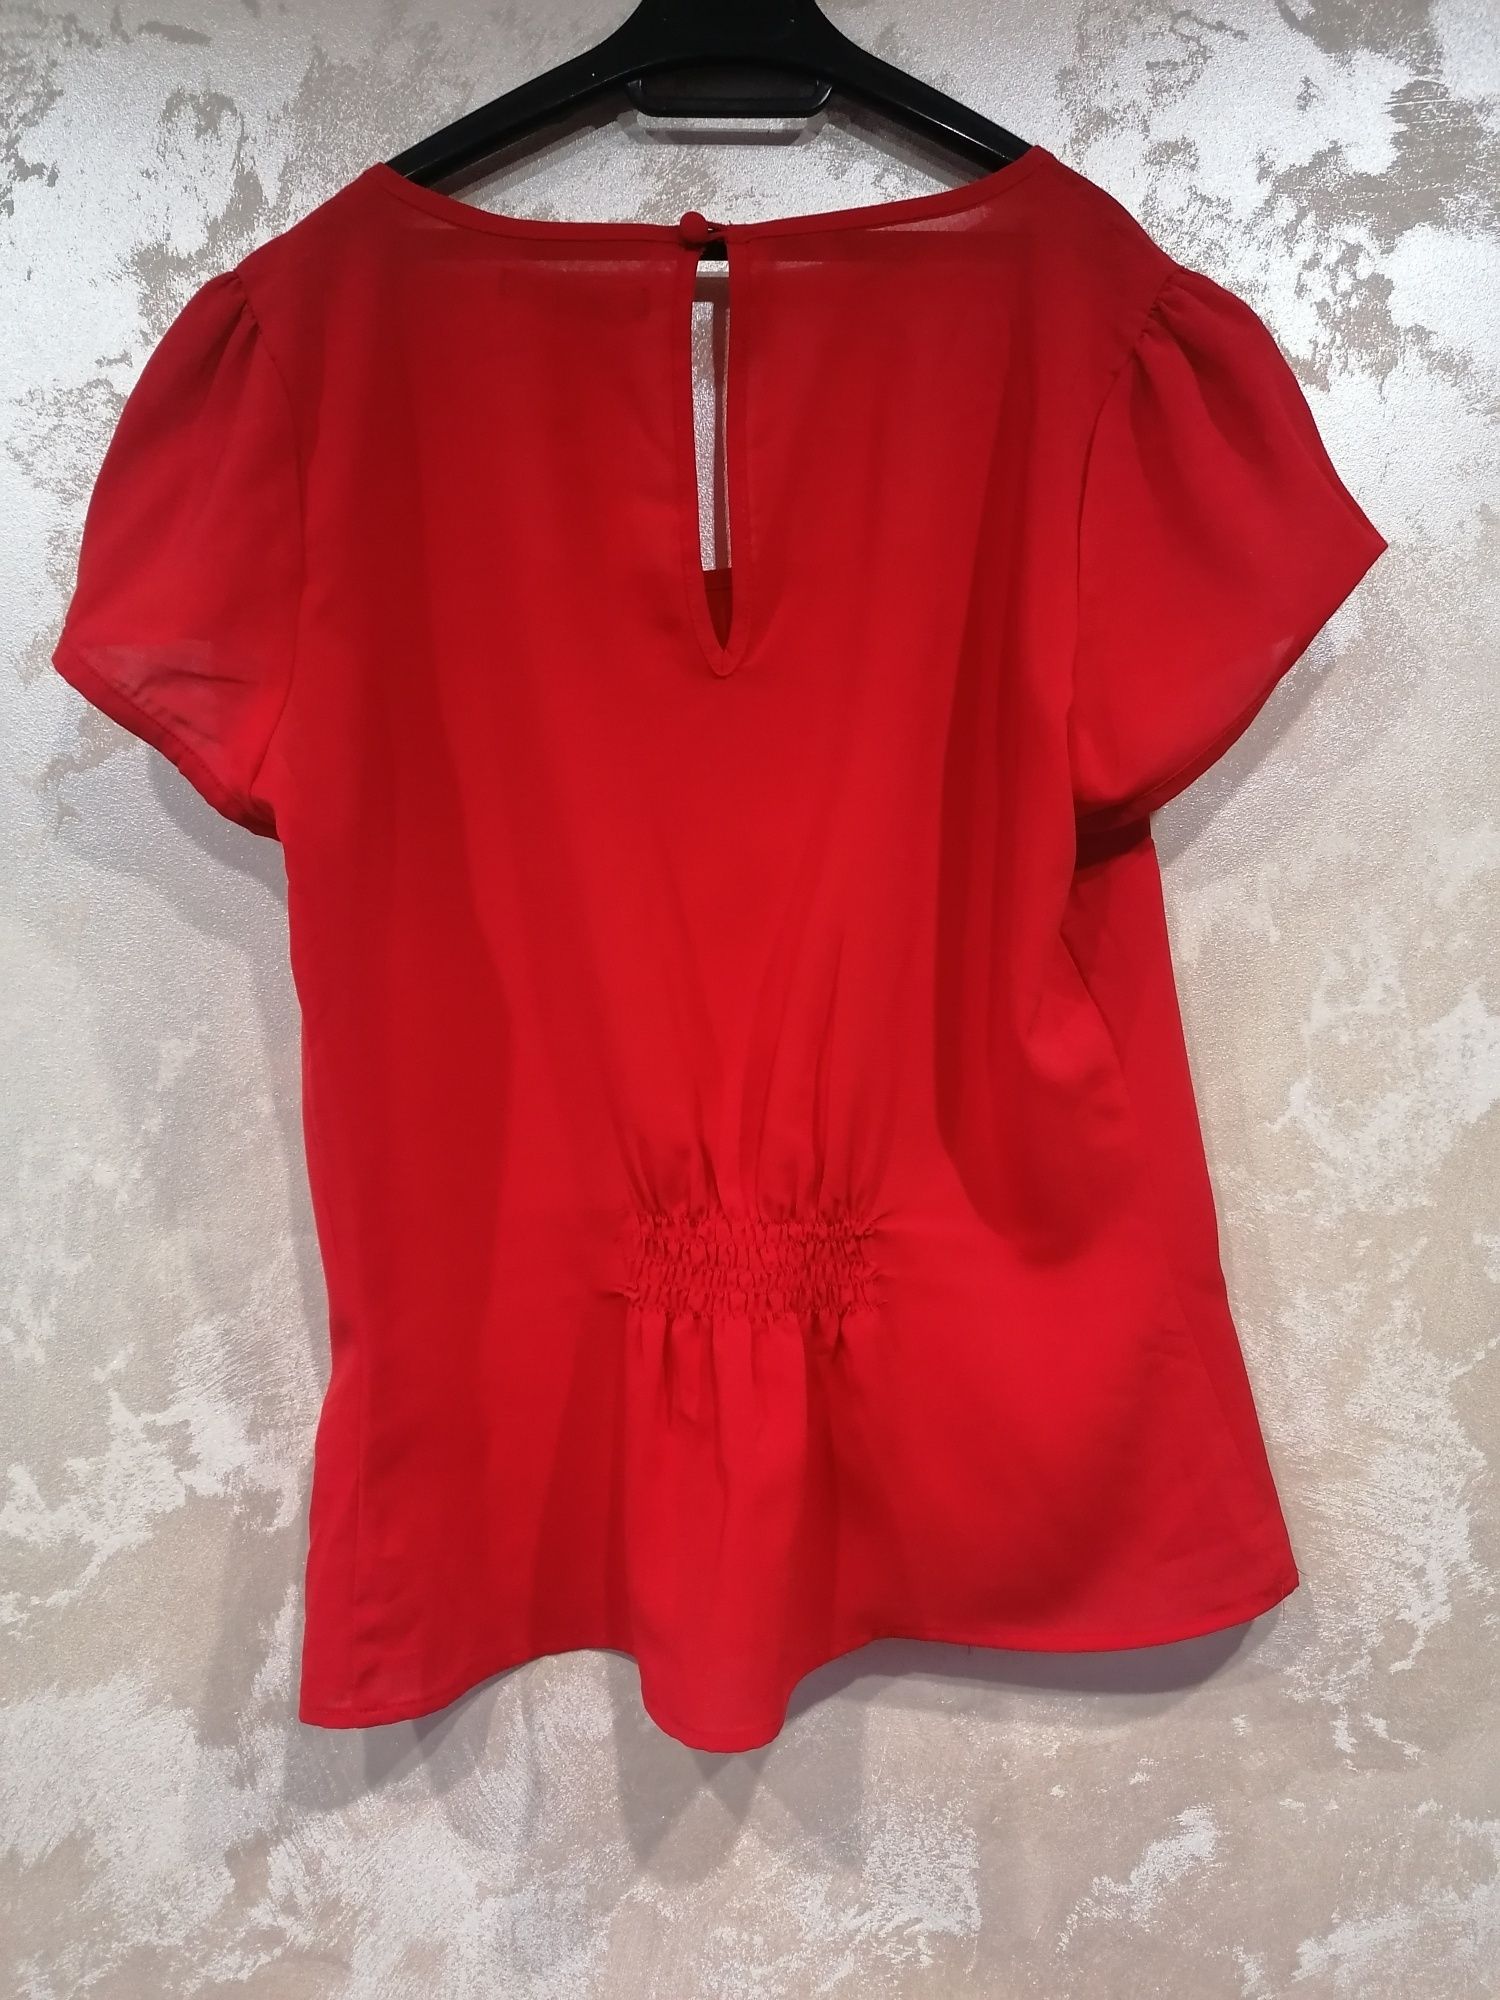 Elegancka zwiewna czerwona bluzka marki Atmosphere rozmiar M/38/10